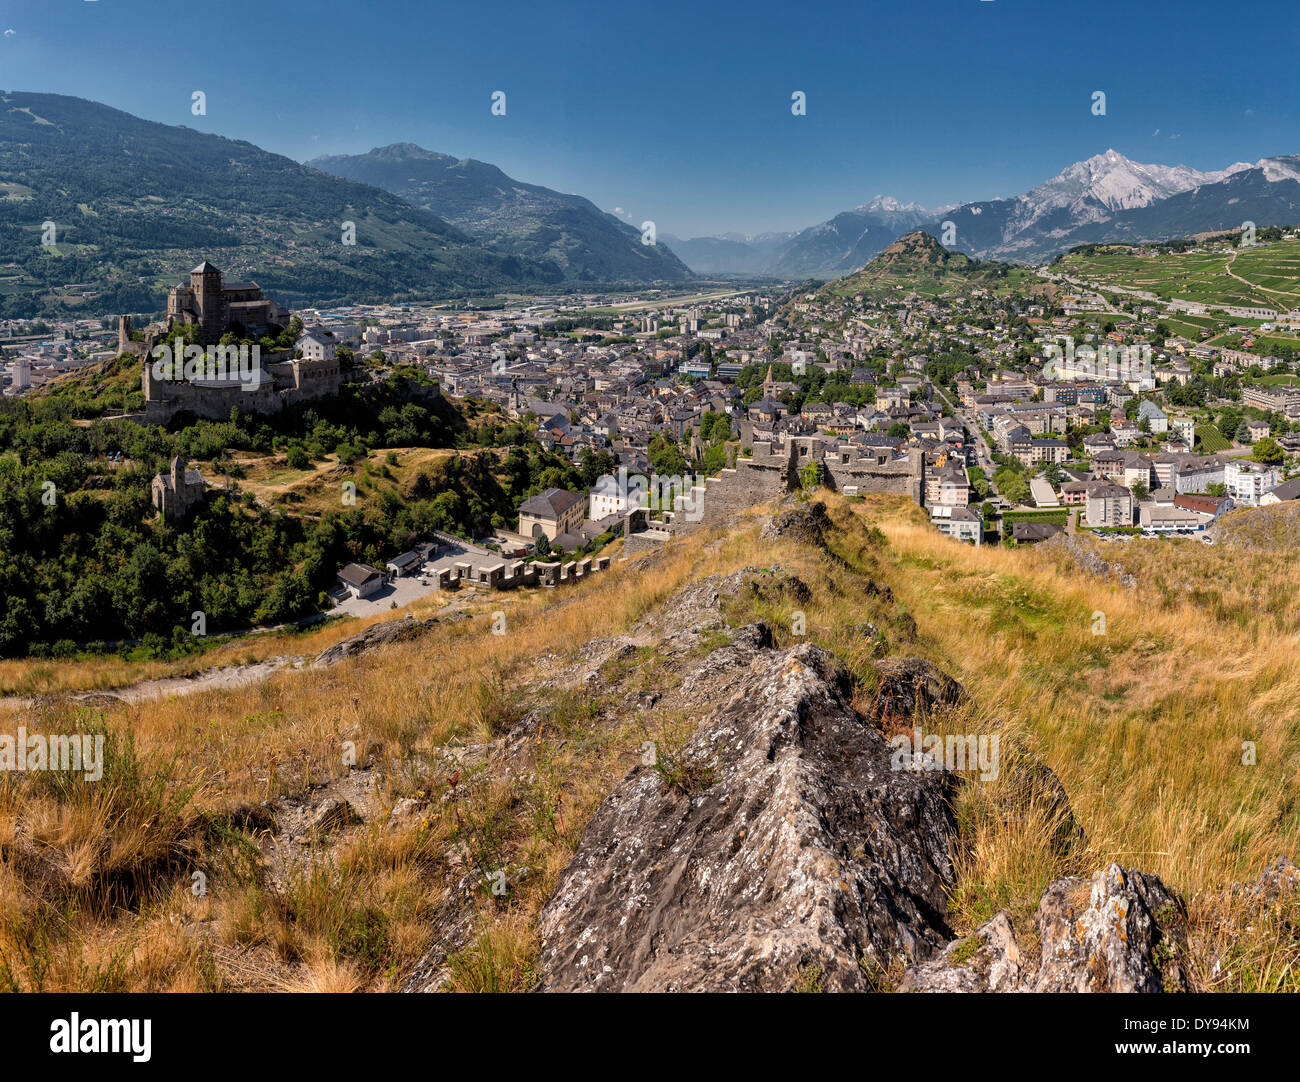 Vista, Chateau de Valere, castillo, ciudad, pueblo, verano, montañas, colinas, Sion, Wallis, Valais, Suiza, Europa Foto de stock